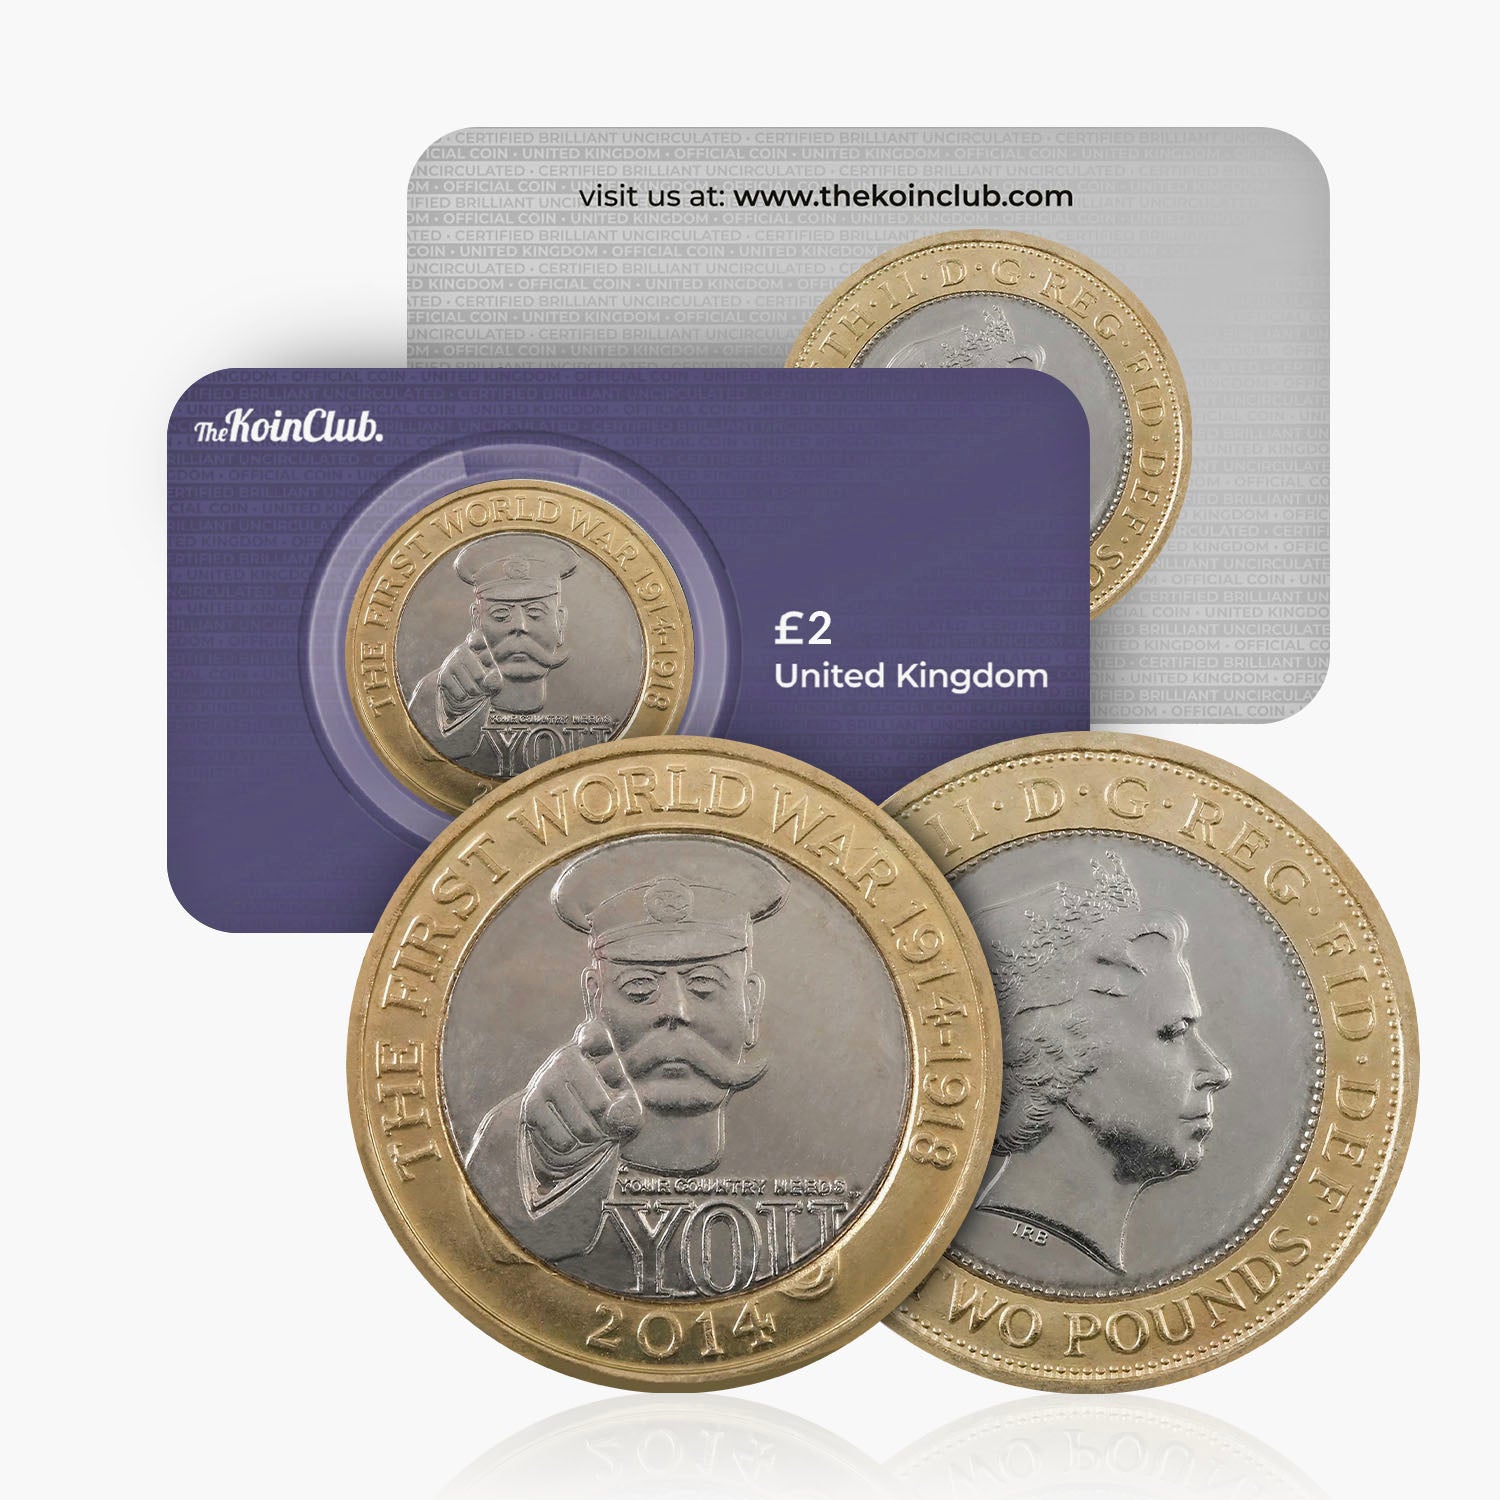 2014 Circulated First World War Centenary UK £2 Coin